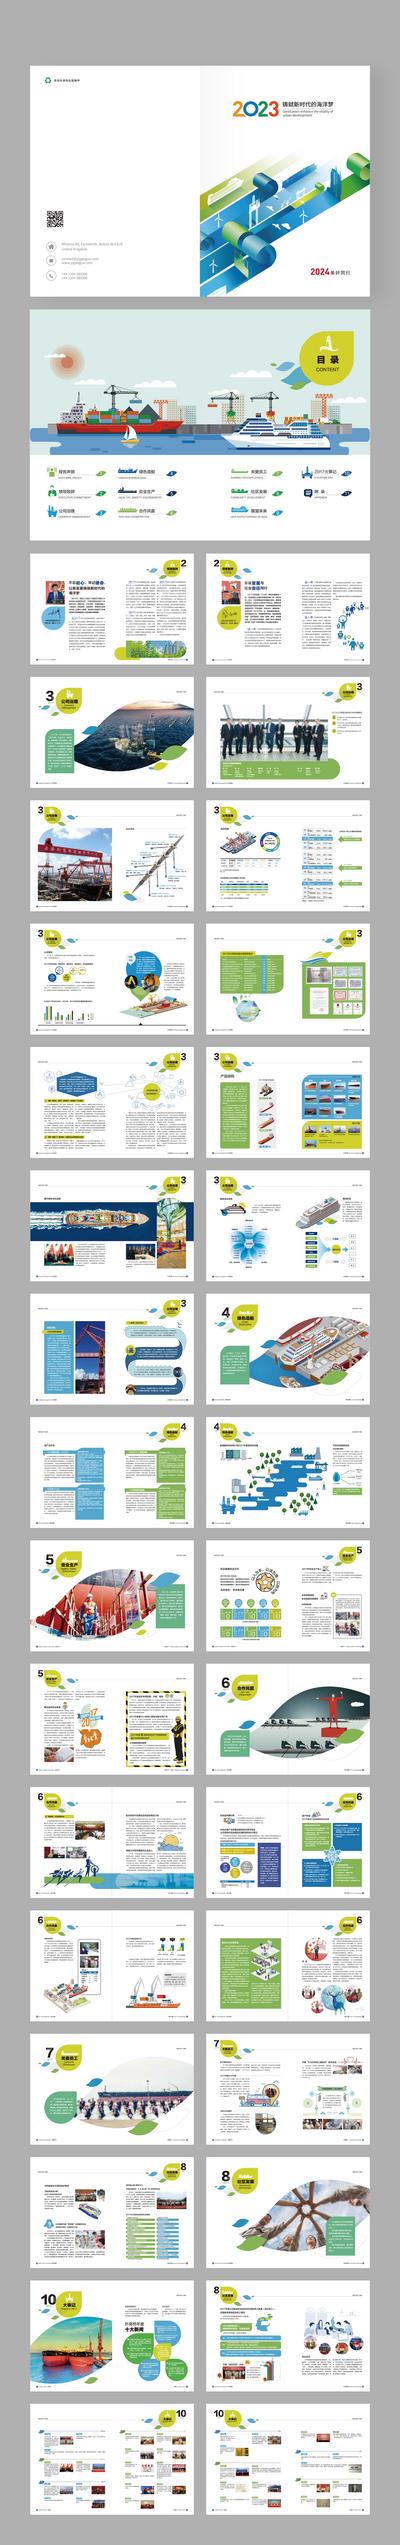 南门网 画册 宣传册 物流 海运 海洋运输 供应链 科技 节能 历程 荣誉 发展  安全生产 数据 能源 电力 环保  企业文化  